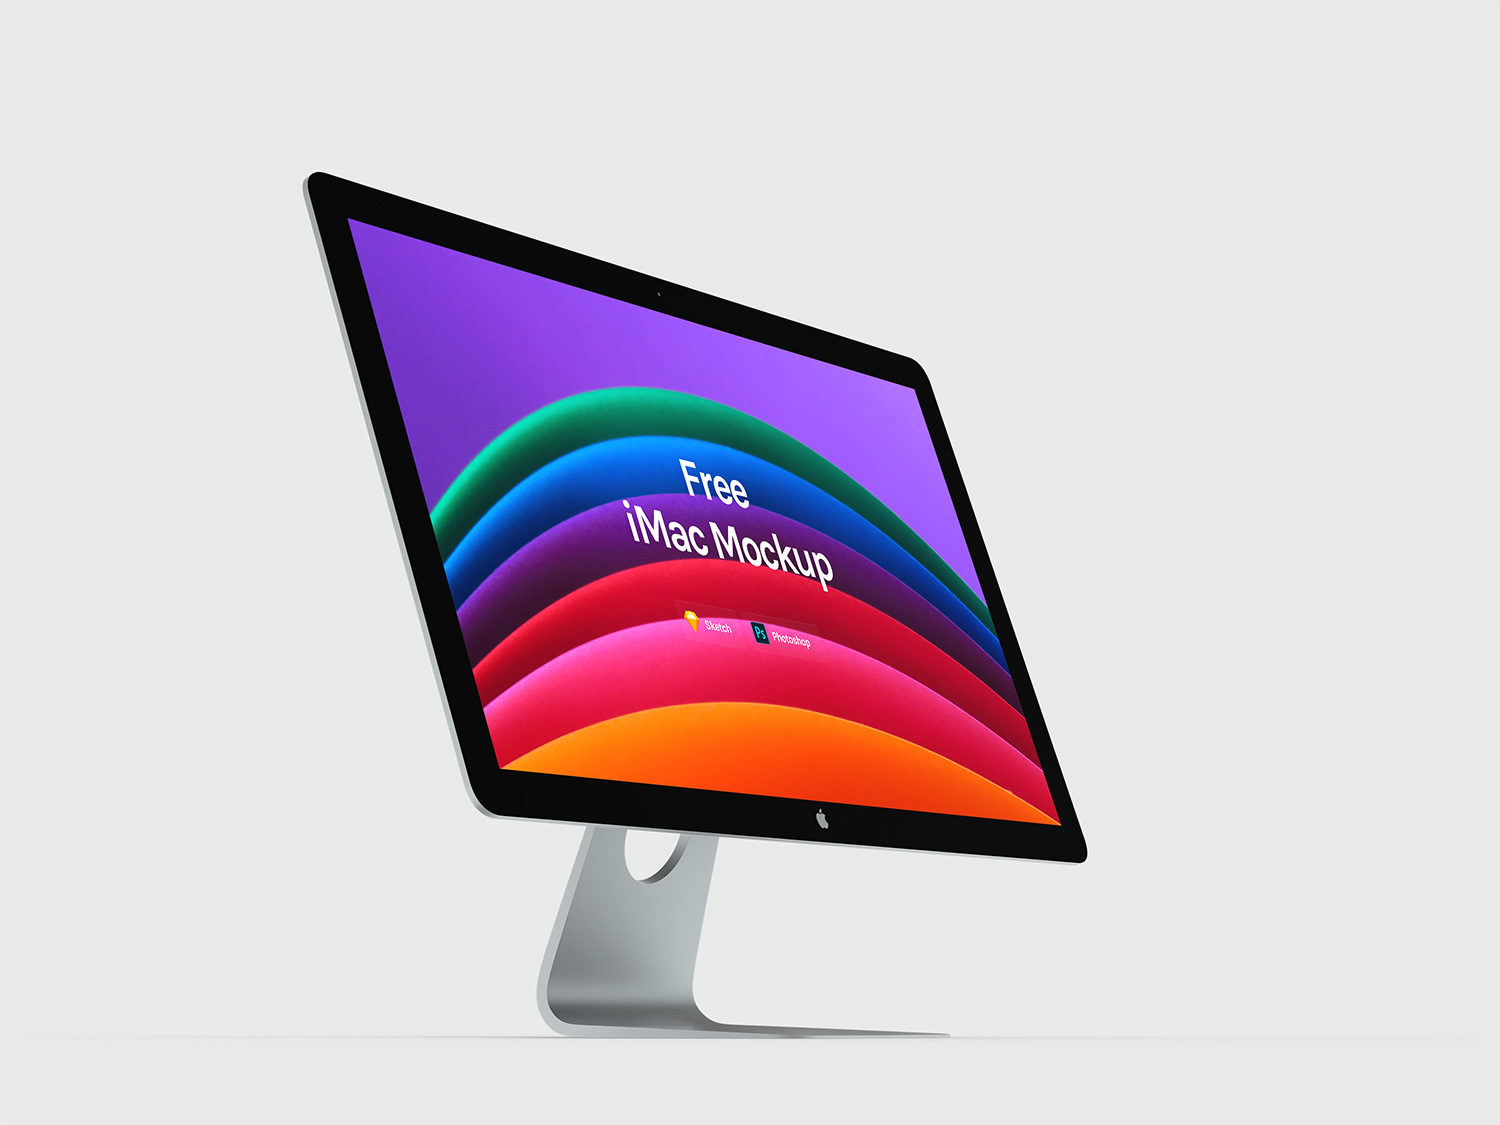 Apple iMac Mockups Free